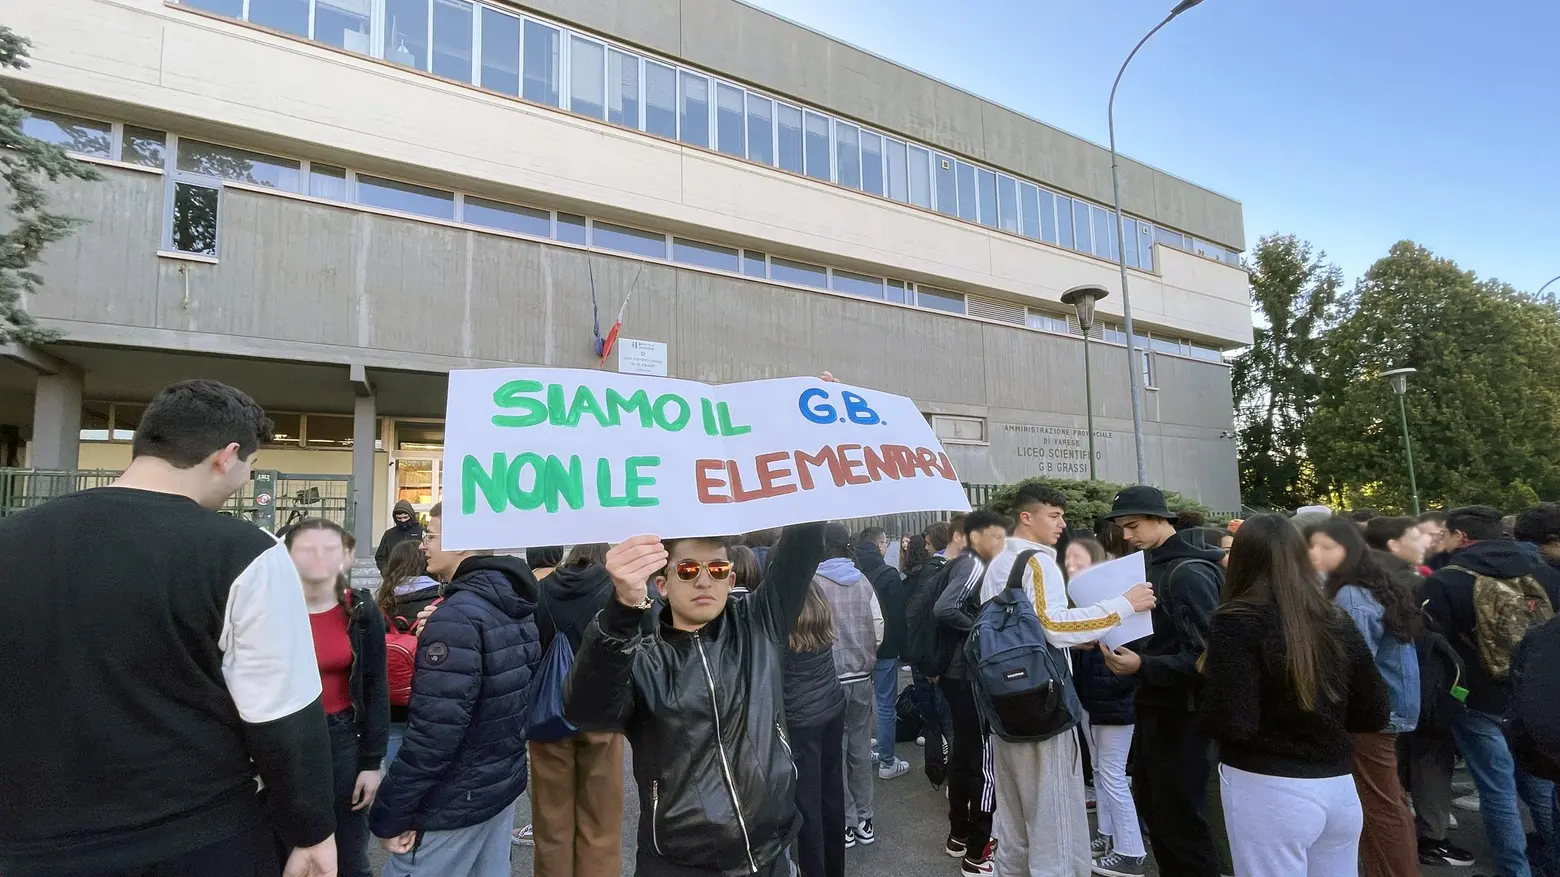 Il liceo  Grassi in rivolta  Gli studenti alzano la voce  "Non siamo le elementari"